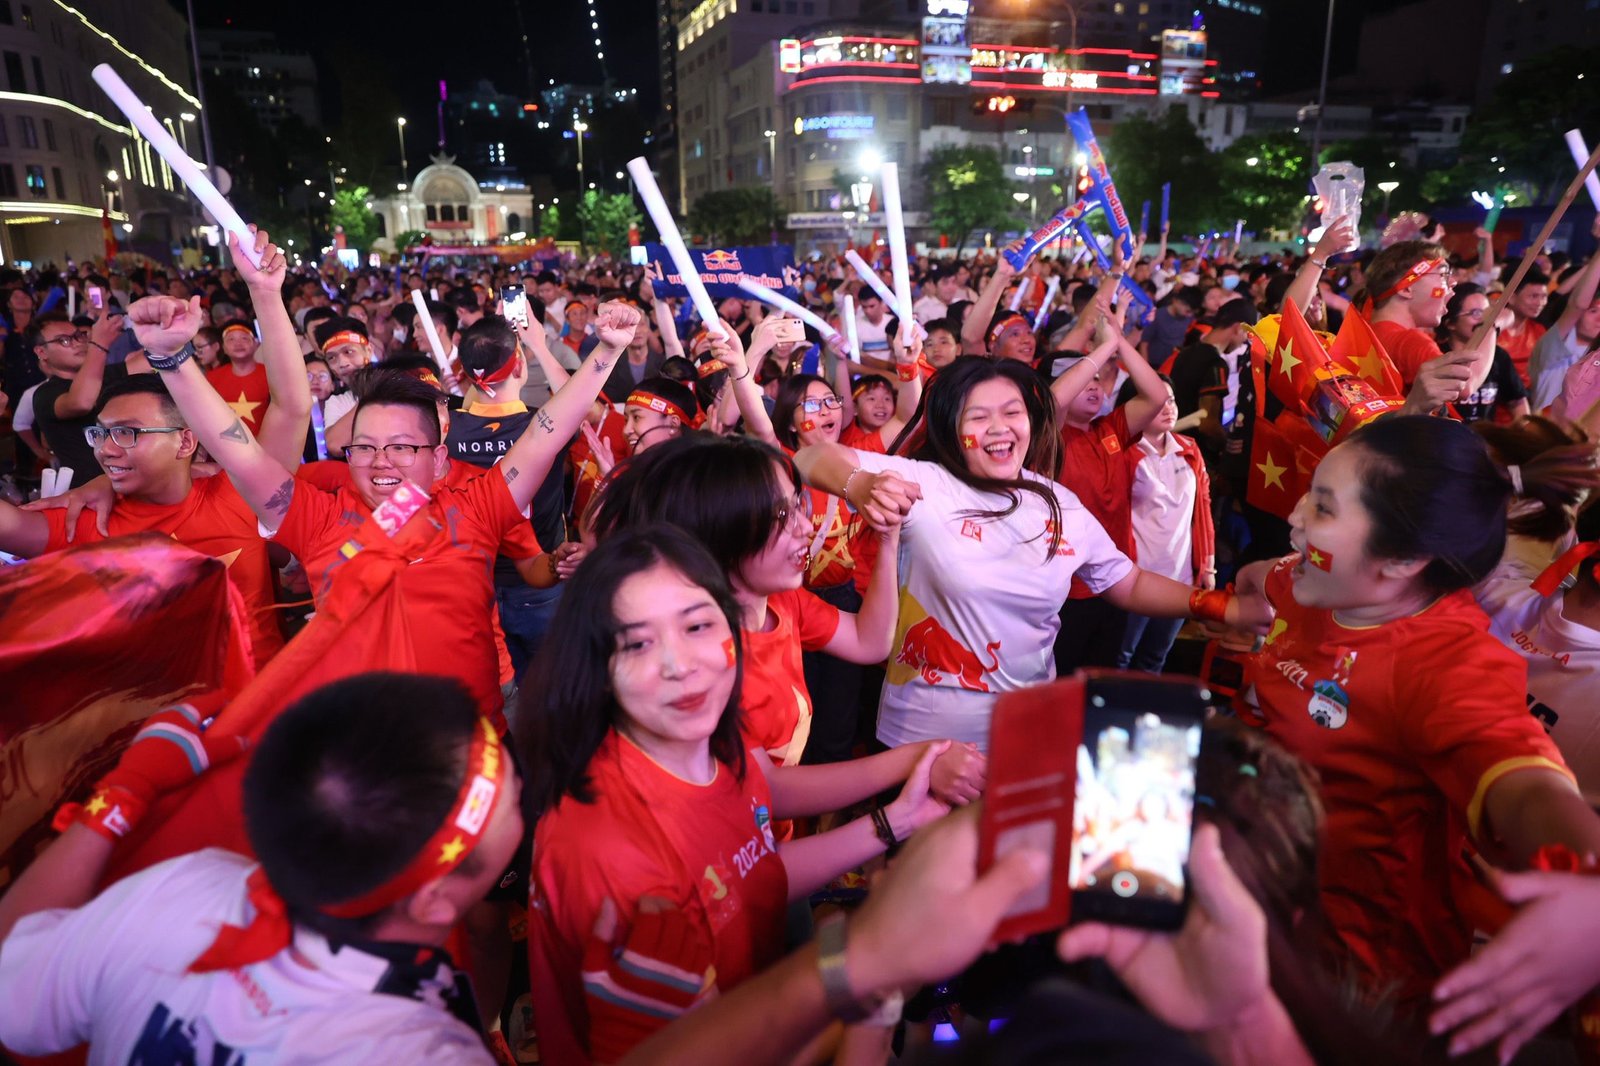 Saigon fans lit fireworks to celebrate Tien Linh’s double